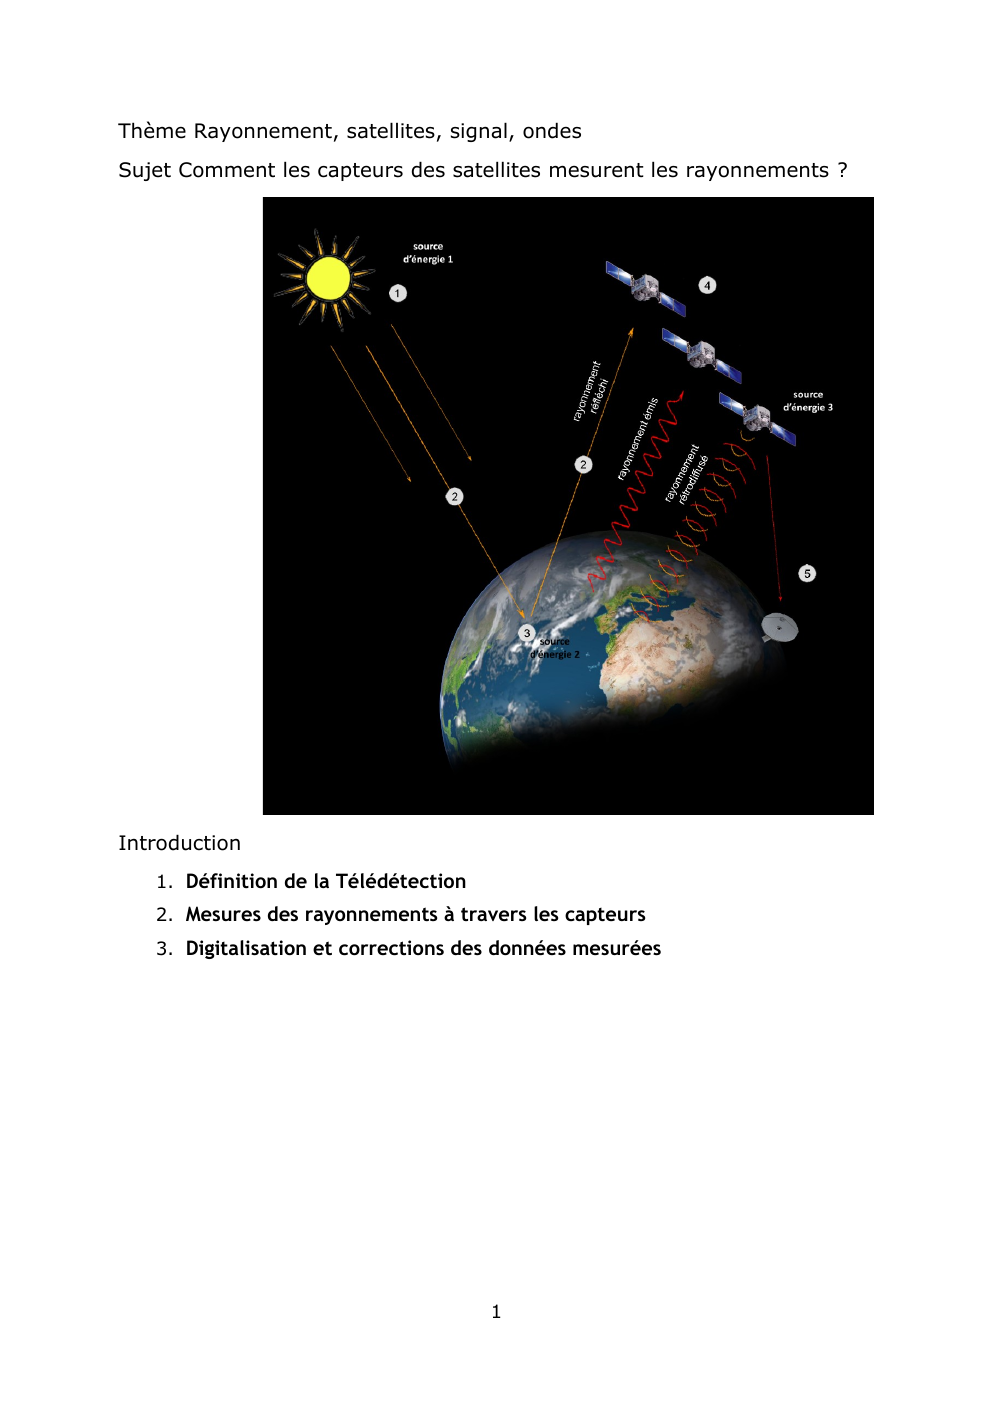 Prévisualisation du document comment fonctionnent les satellites pour mesurer les rayonnements